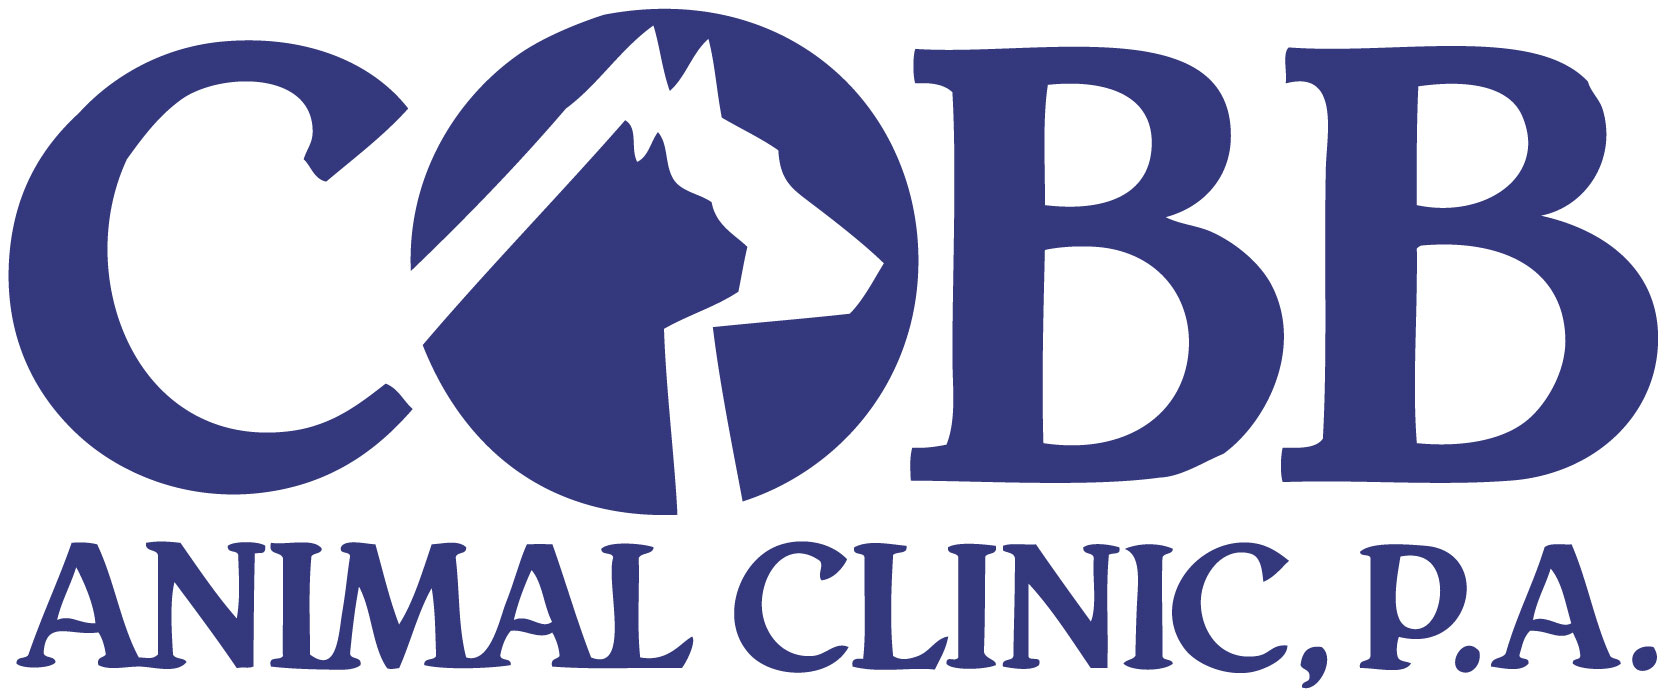 Cobb Animal Clinic